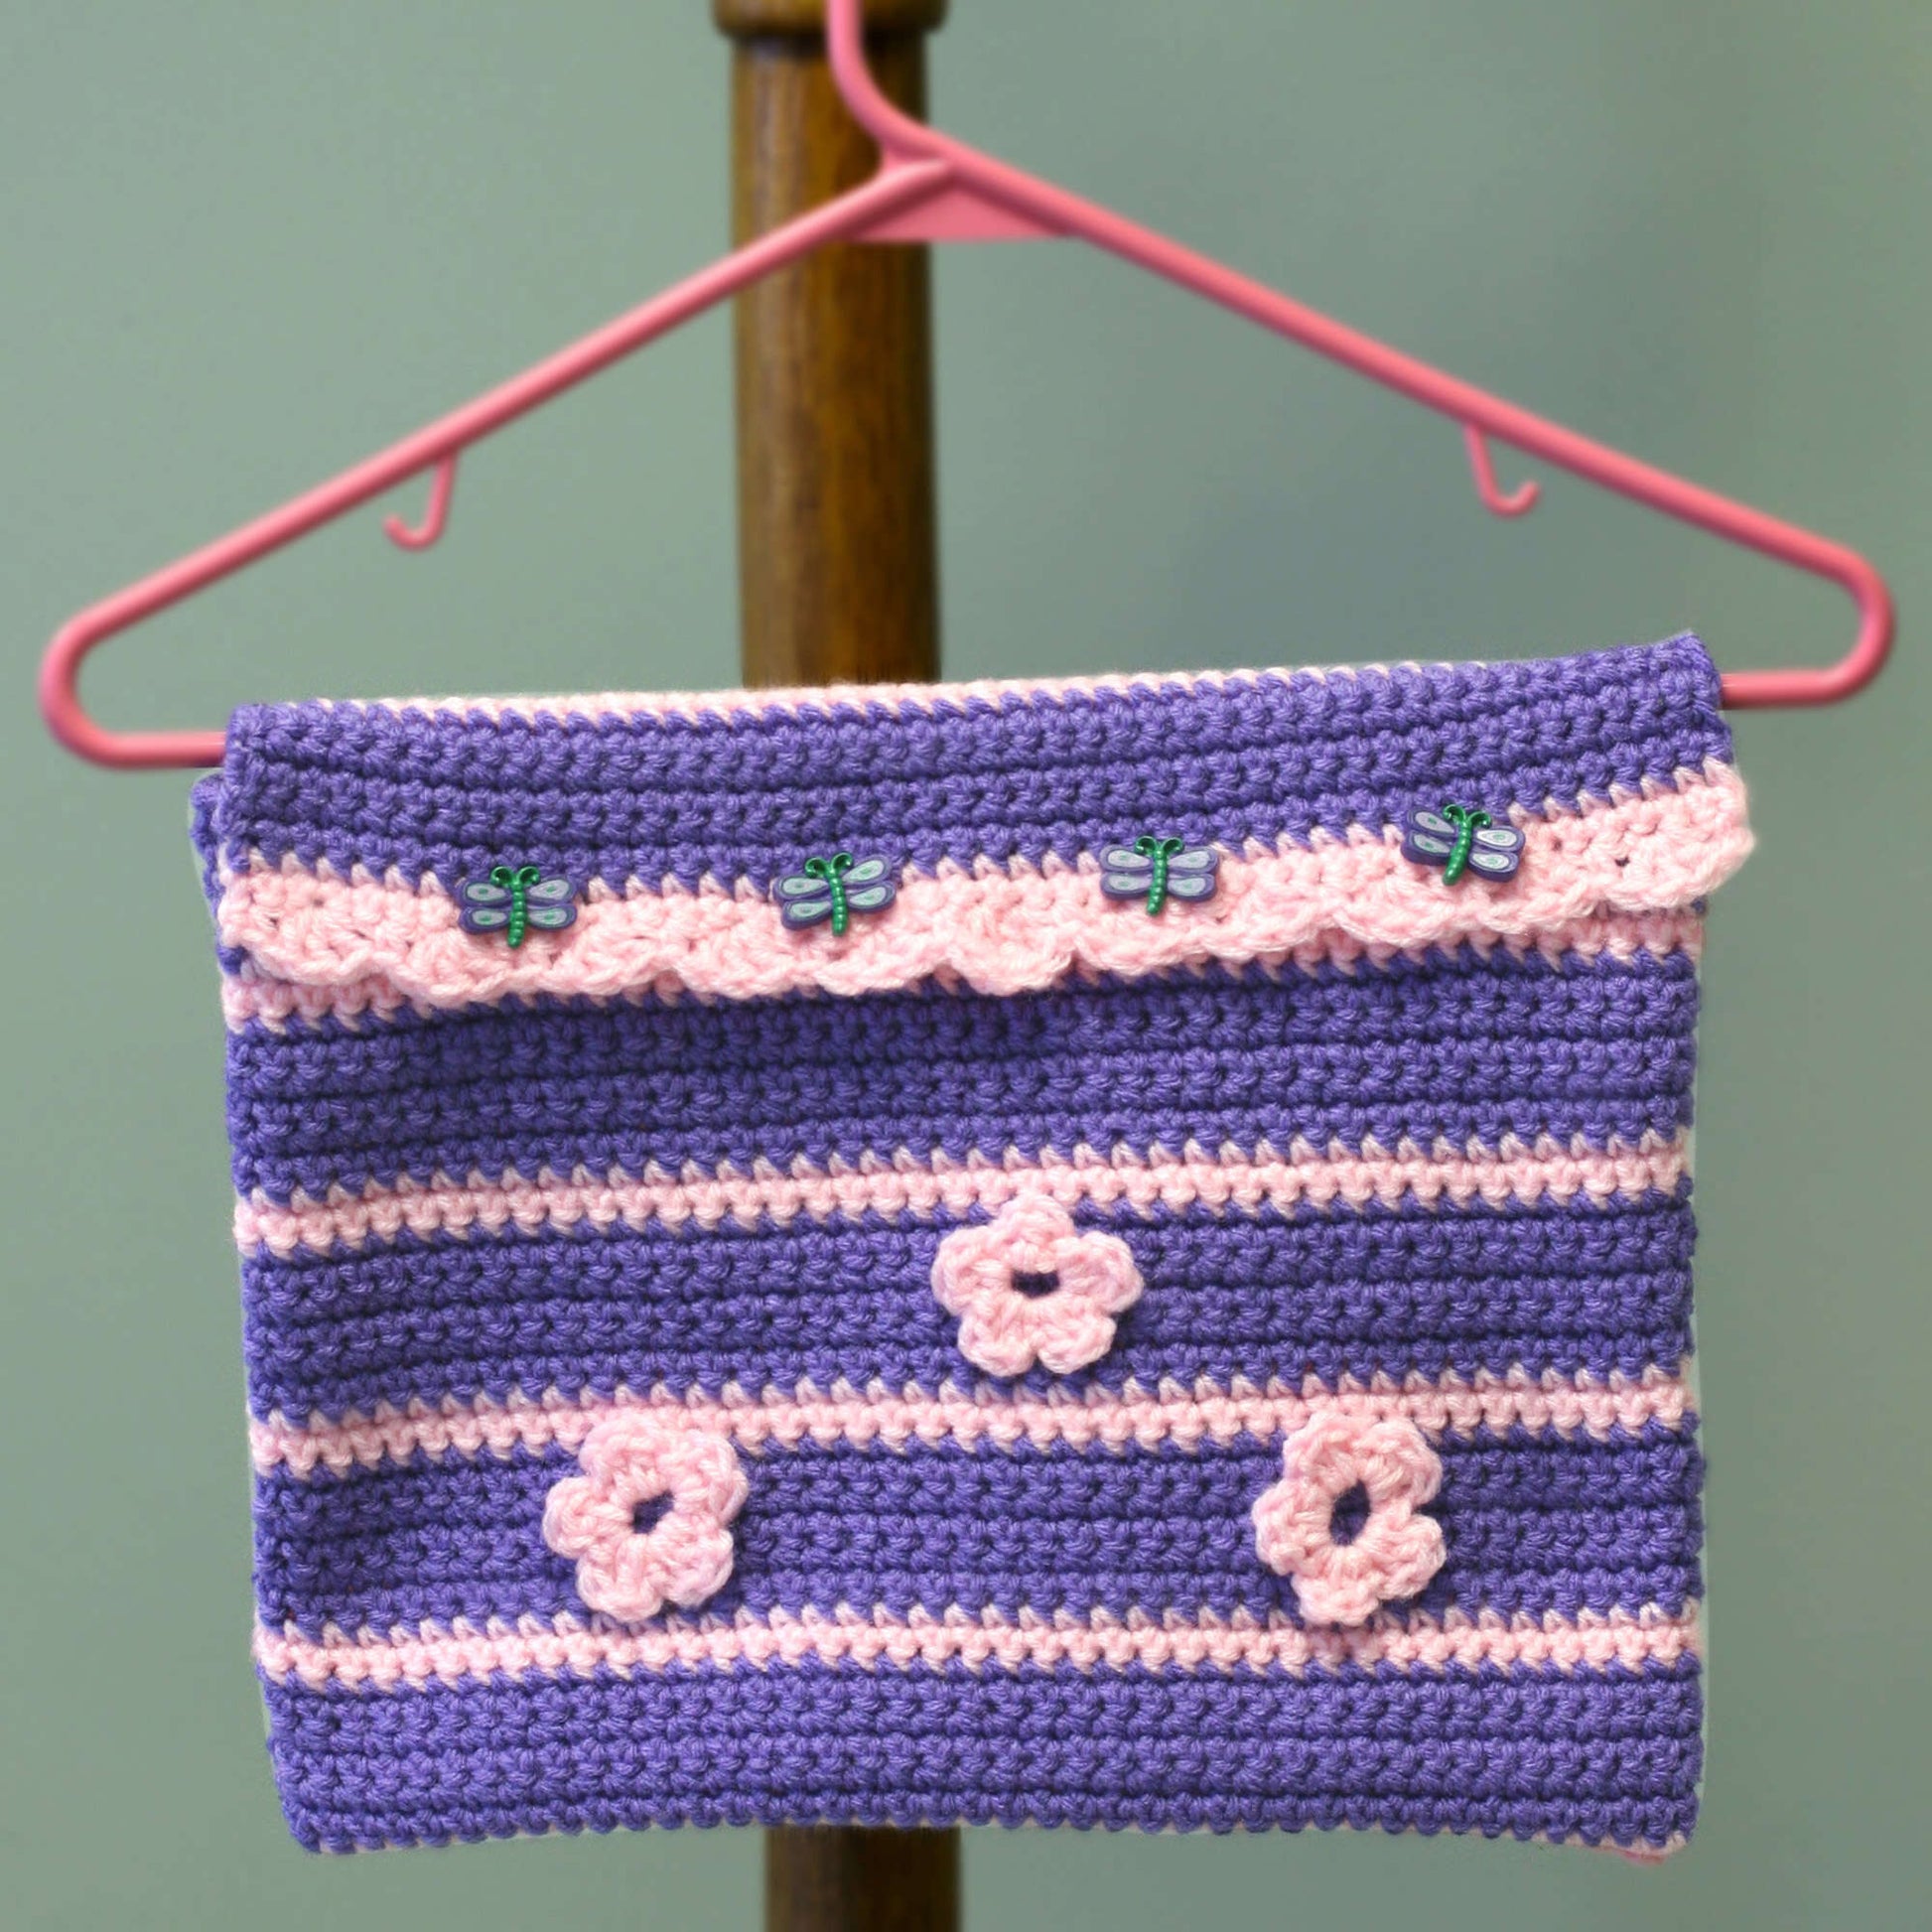 Free Red Heart Crochet Going to Grandma's Pocket on Hanger Pattern